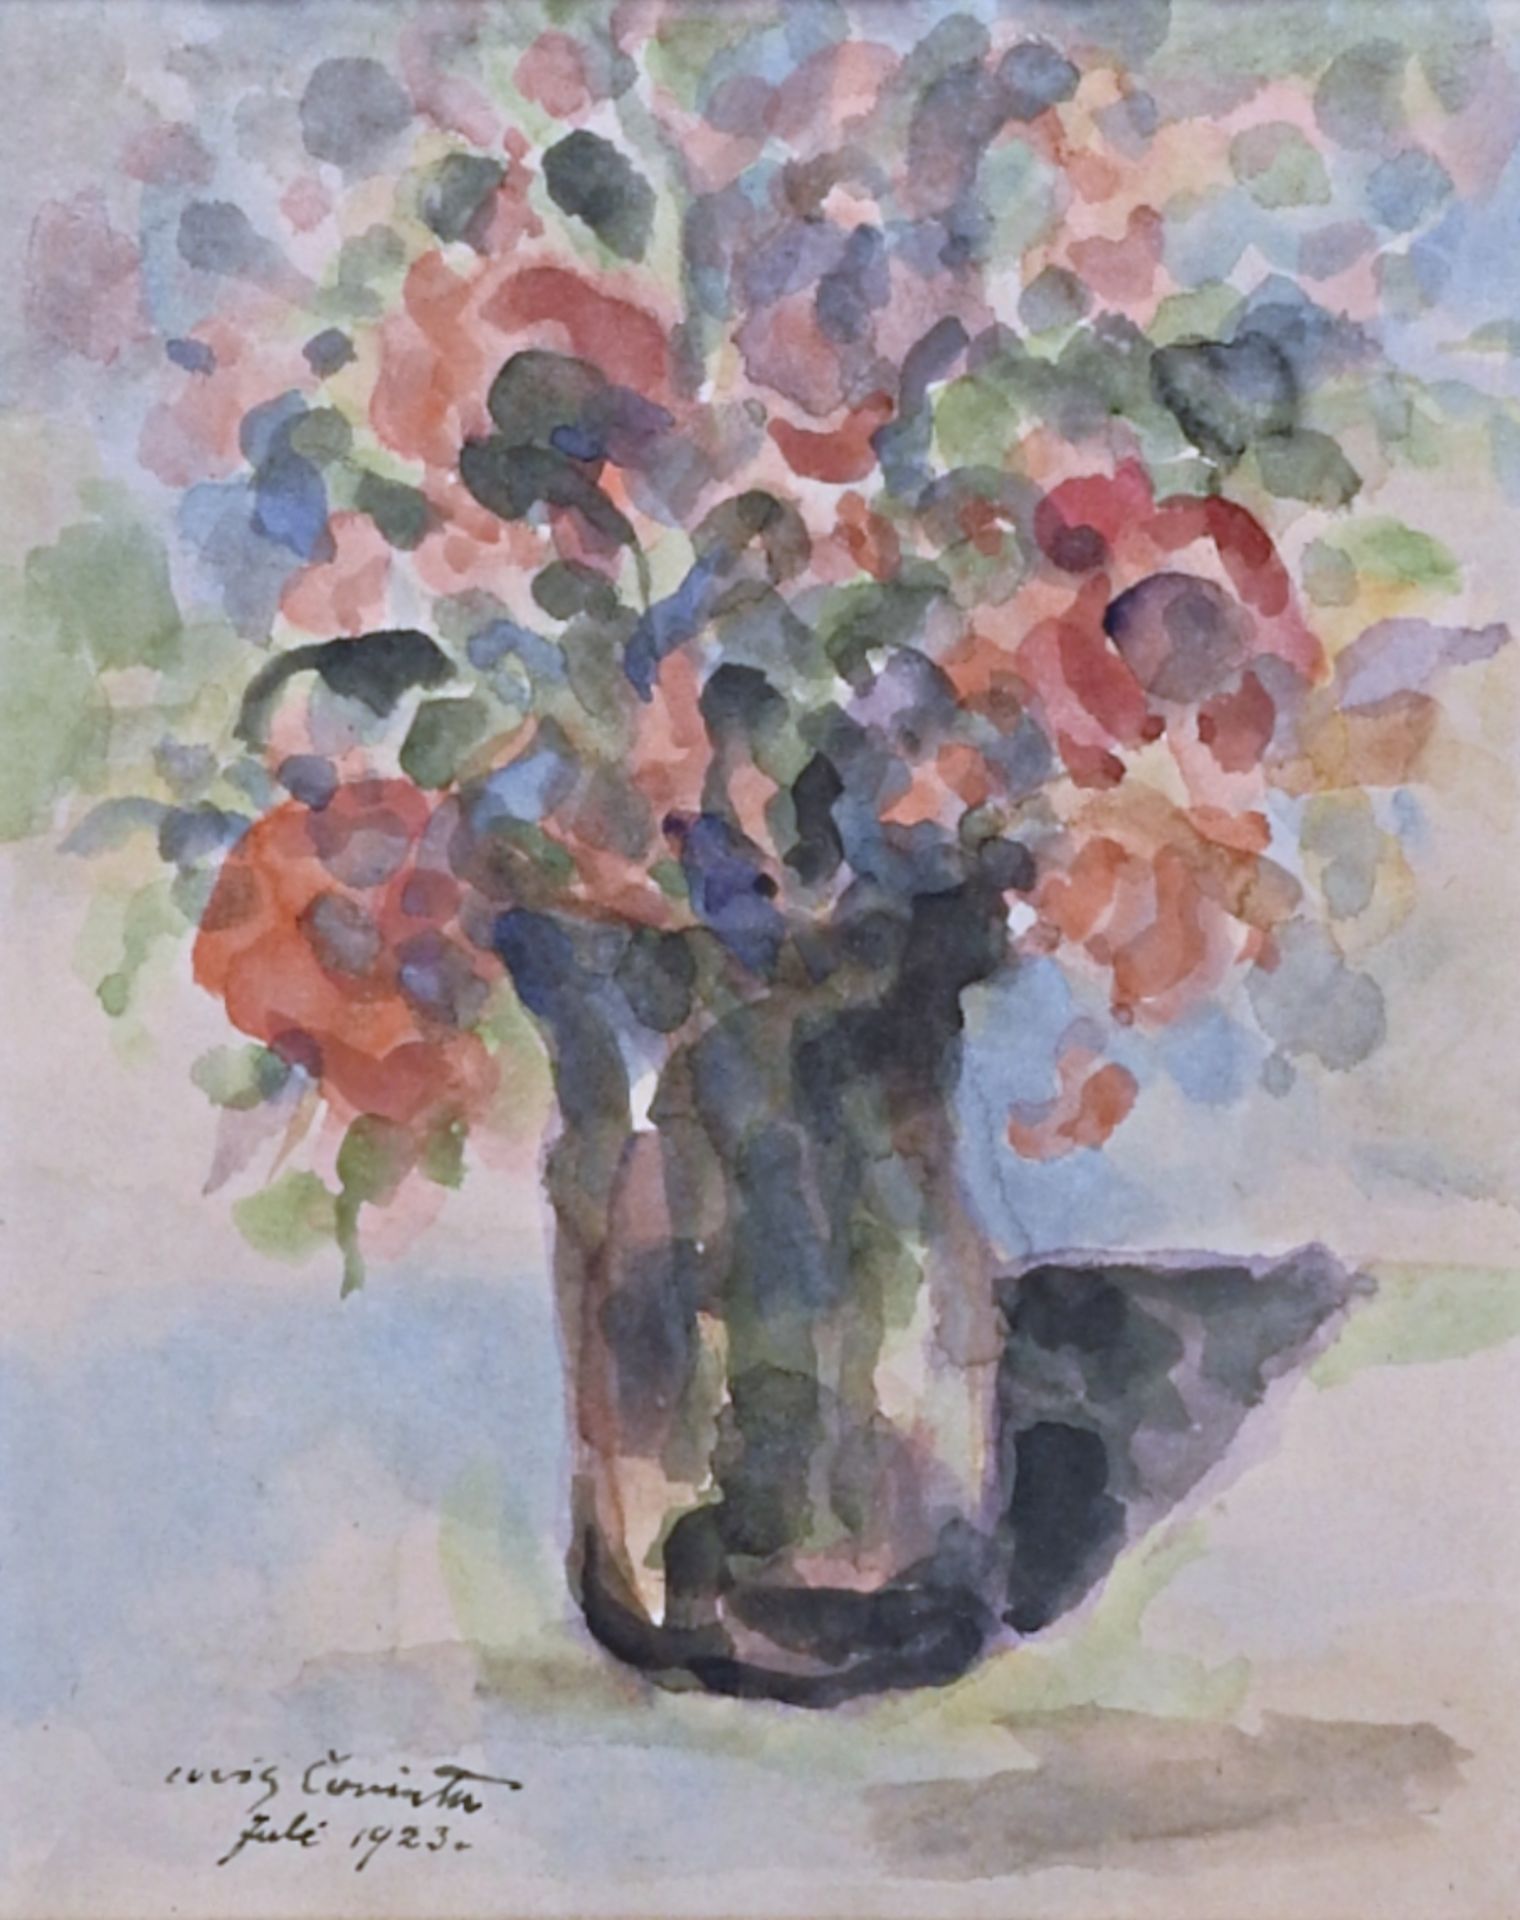 Lovis Corinth (1858 Tapiau – 1925 Zandvoort), Blumenstillleben mit Vase